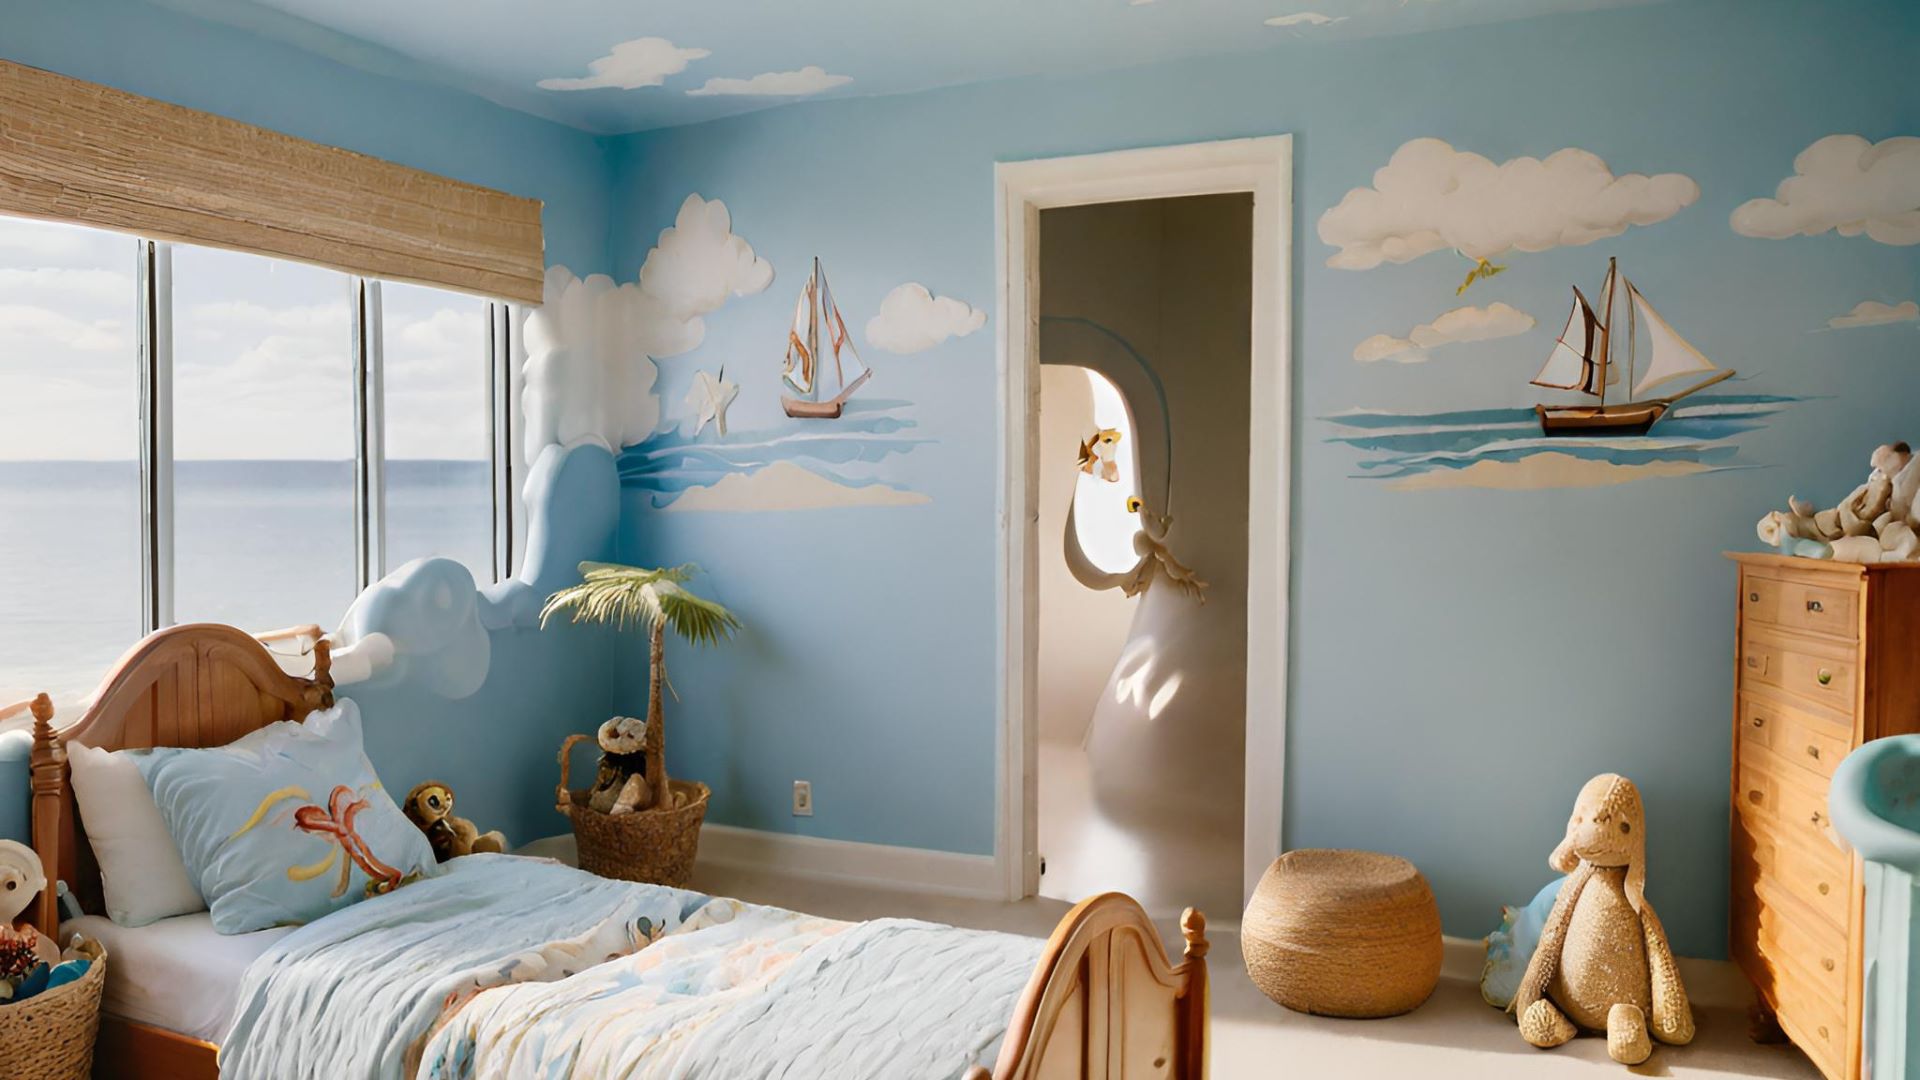 Create a Beach Themed Bedroom with DIY Decor